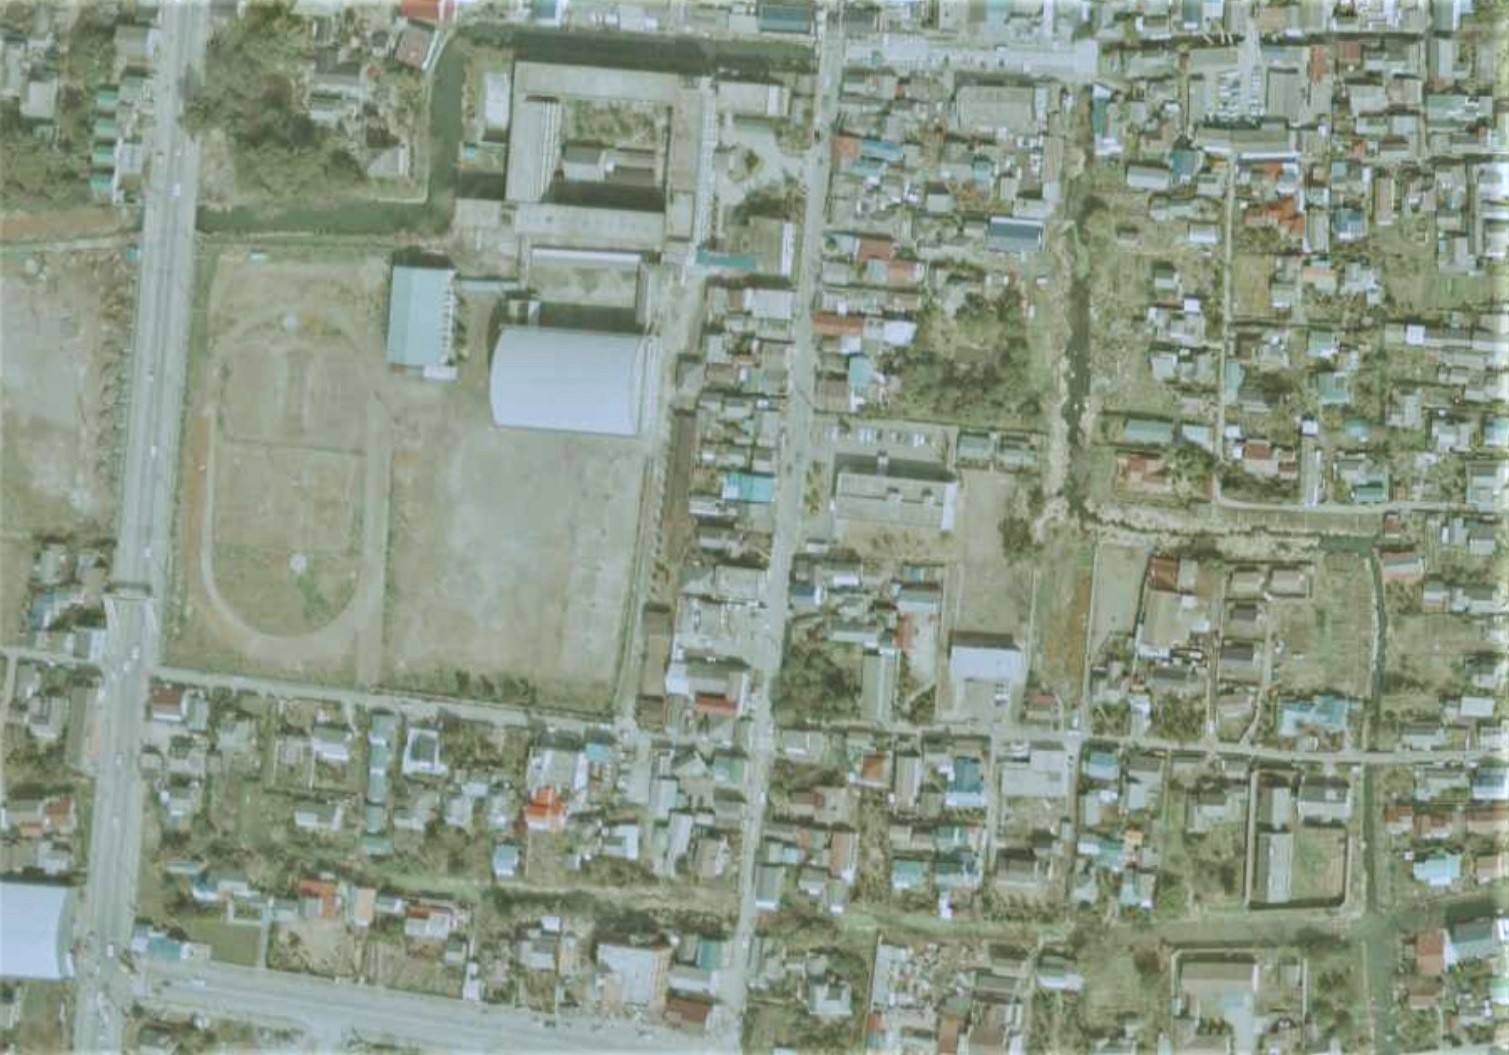 埋没しかけた堀割（本町・新町付近）、昭和50年撮影空中写真（国土地理院Webサイトより、CKU7422-C16B-16〔部分〕） の画像。